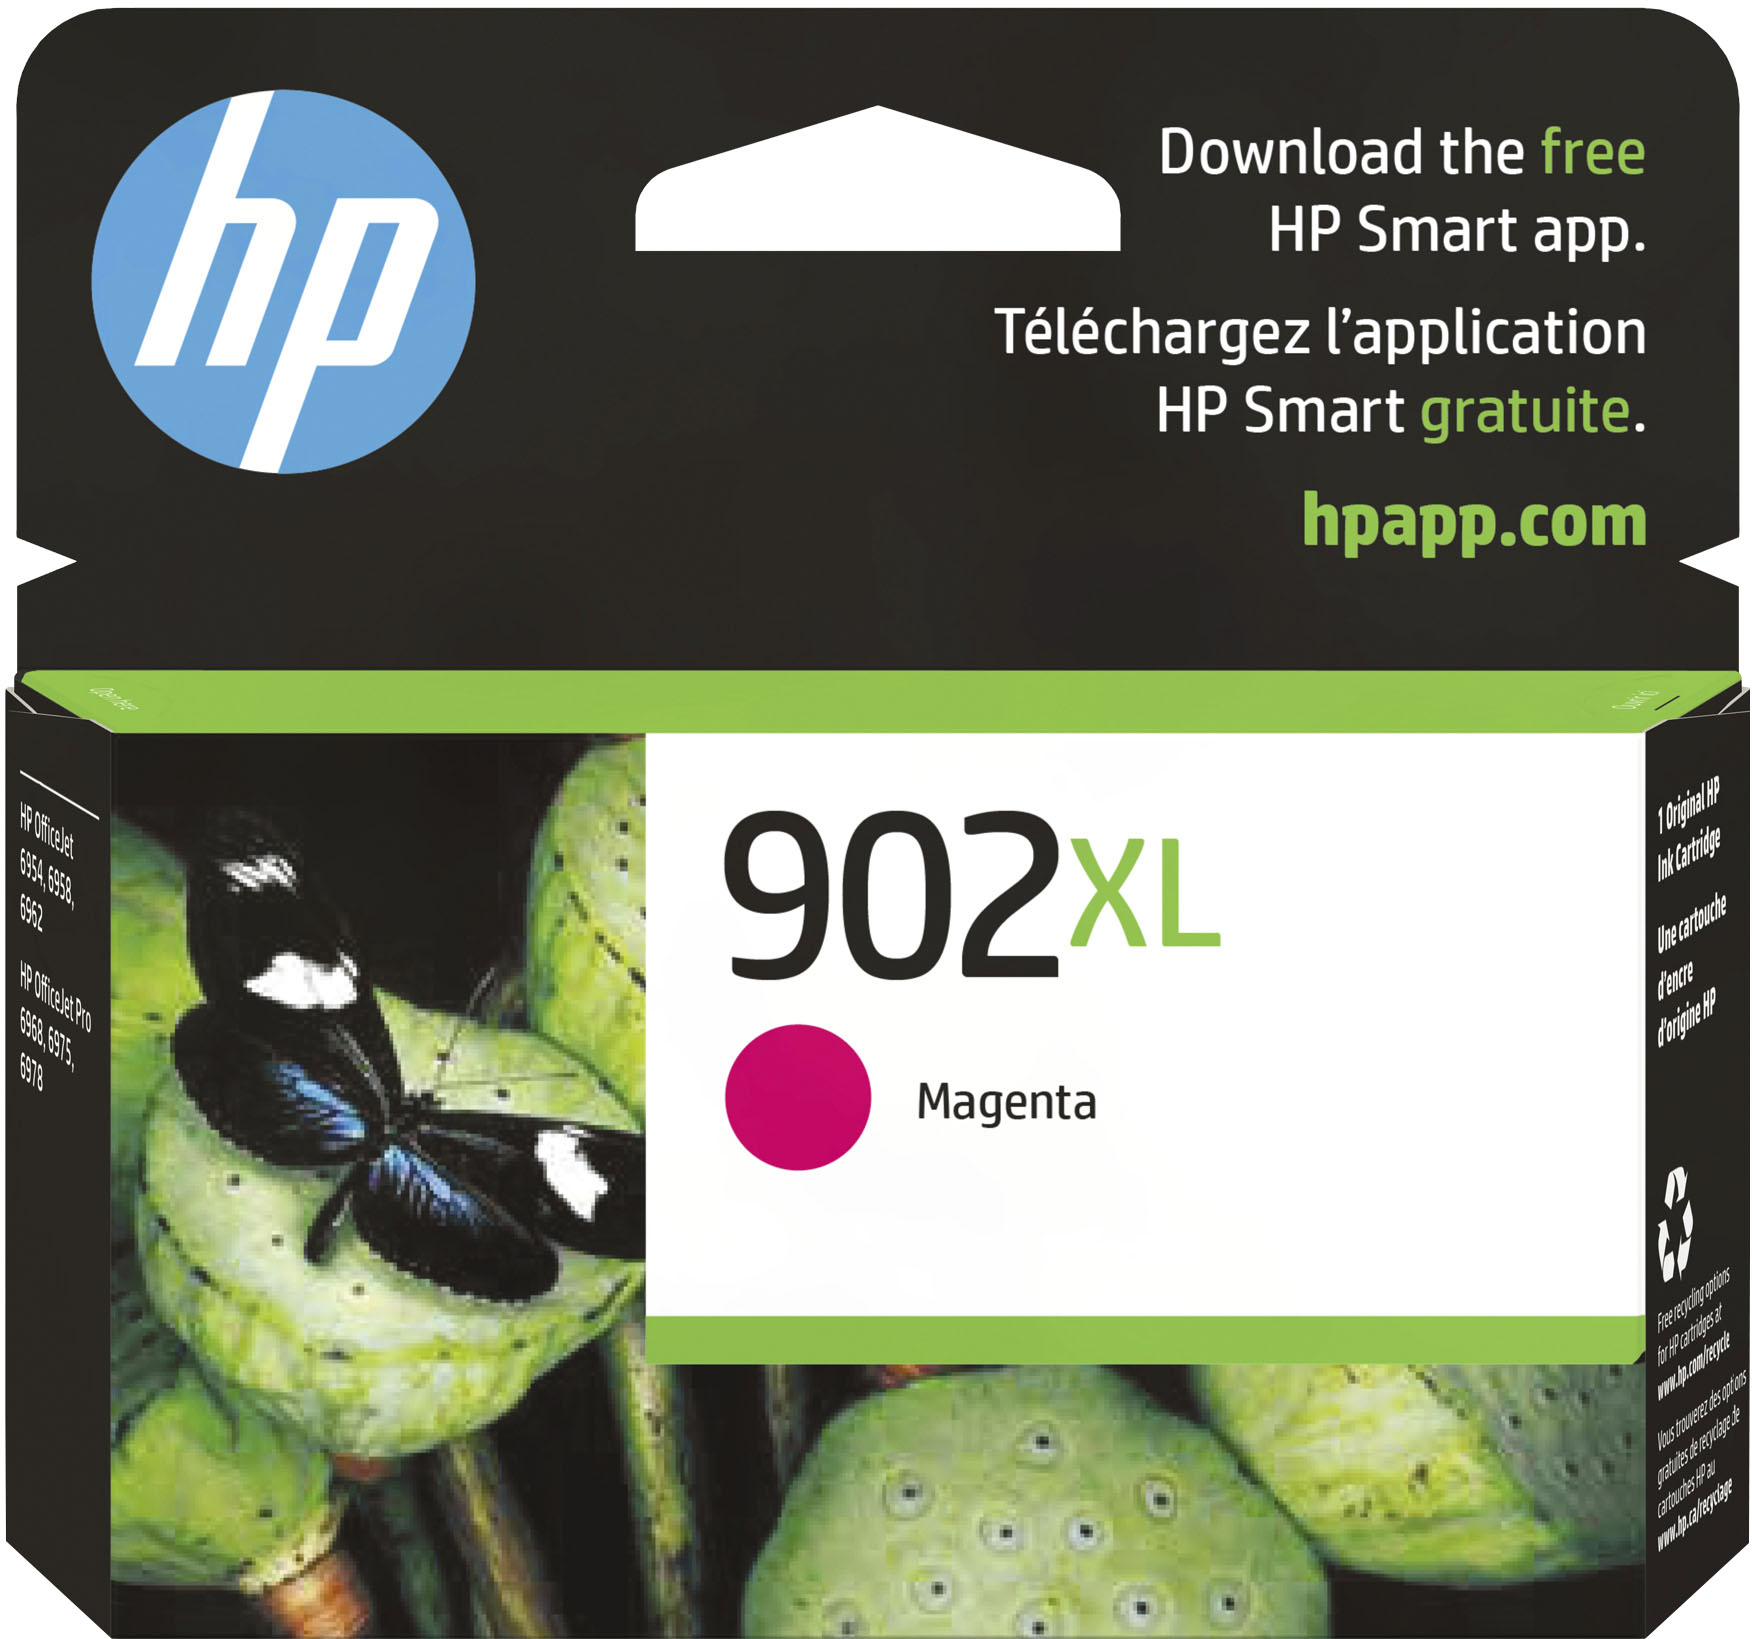 4 Cartouches d'encre Compatible HP 903 XL 903XL pour HP OfficeJet